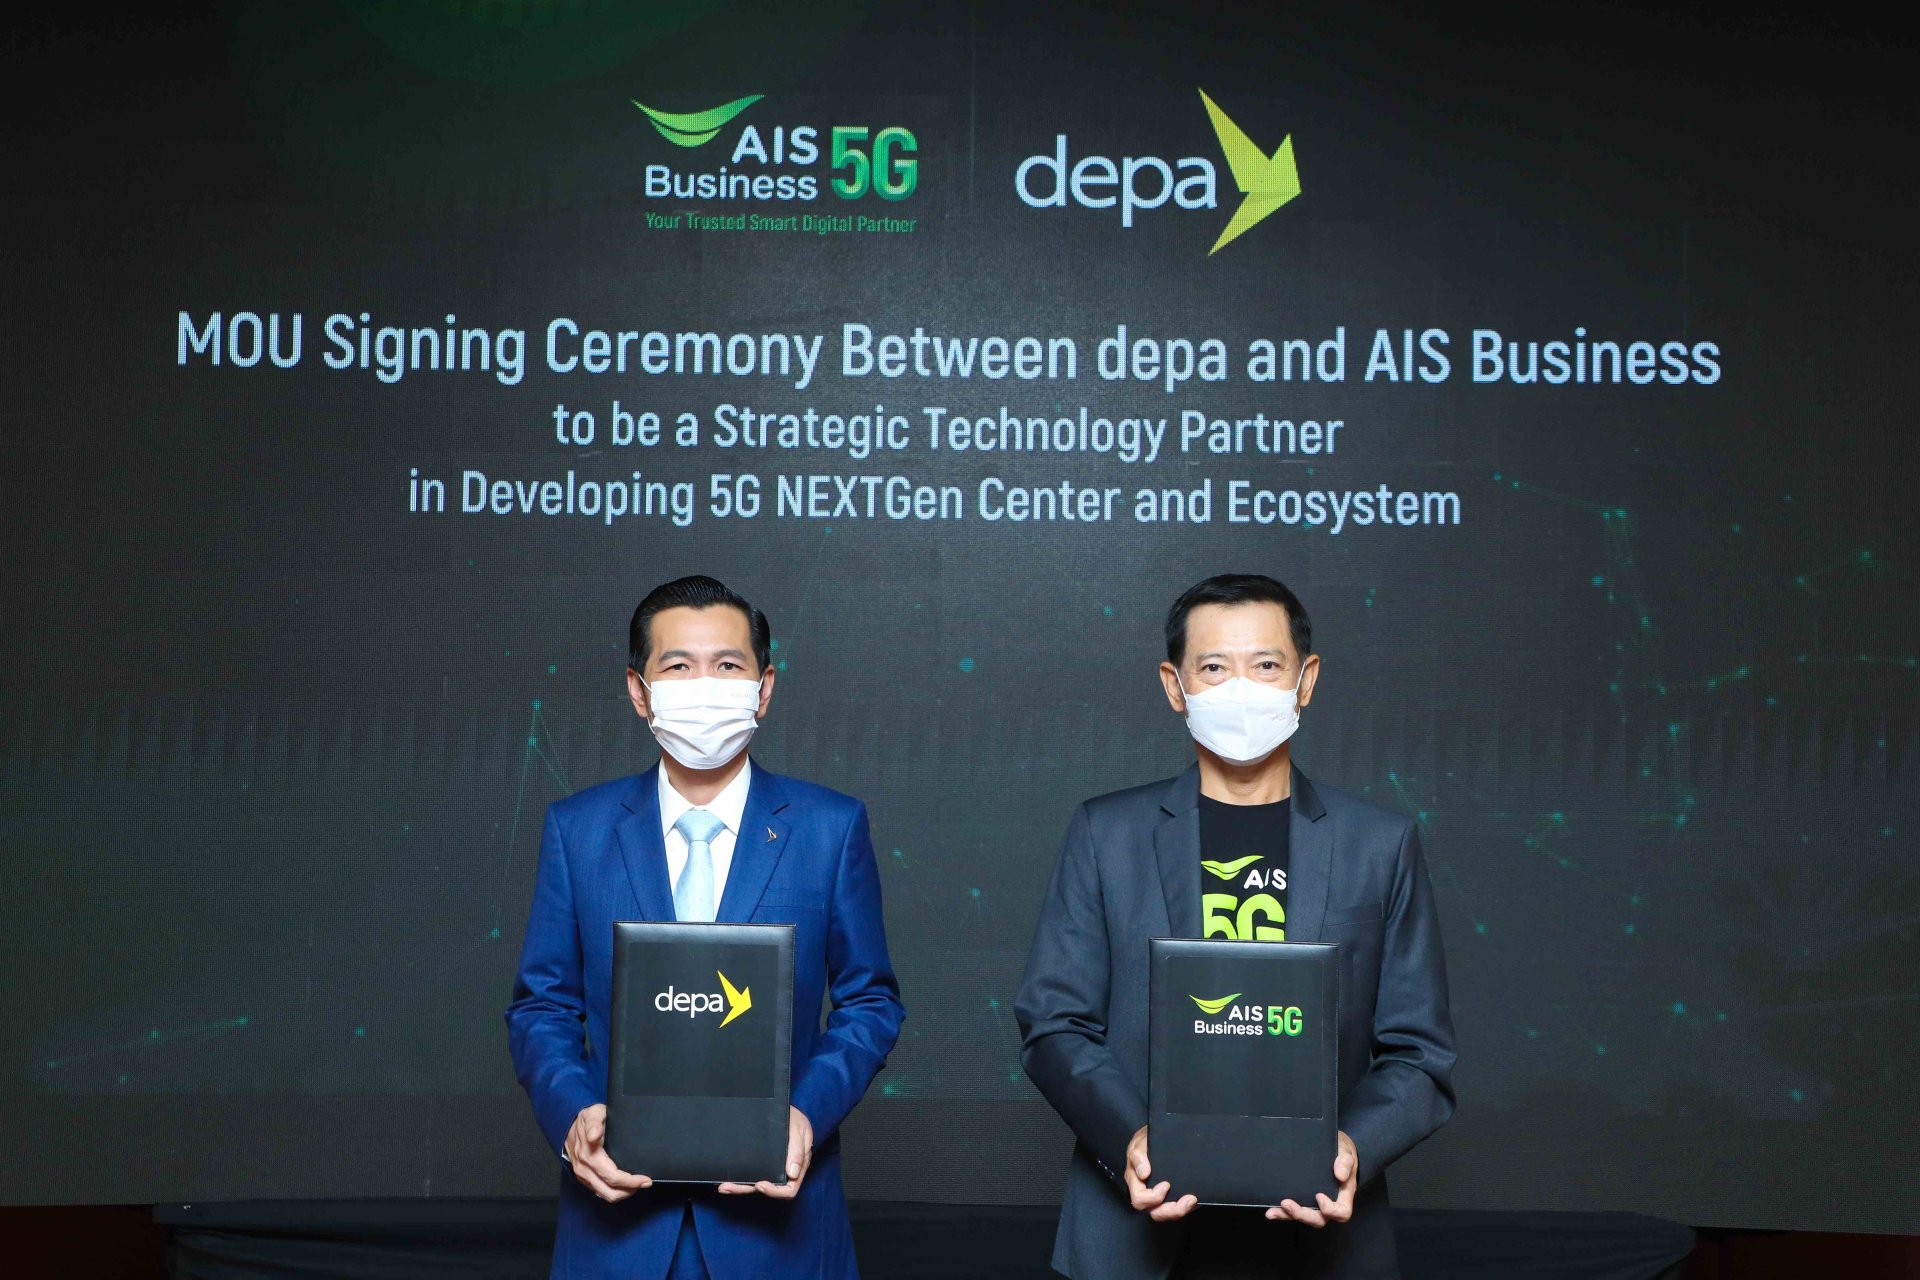 AIS Business ก้าวล้ำนำการใช้เทคโนโลยี 5G สำหรับภาคธุรกิจไทย ด้วยการผสานความร่วมมือ ดีป้า สร้างศูนย์กลางนวัตกรรมและทดสอบ 5G แห่งแรกที่ EEC พร้อมเปิดตัว AIS 5G NEXTGen Platform สำหรับการพัฒนา 5G Applications แห่งแรกในไทย